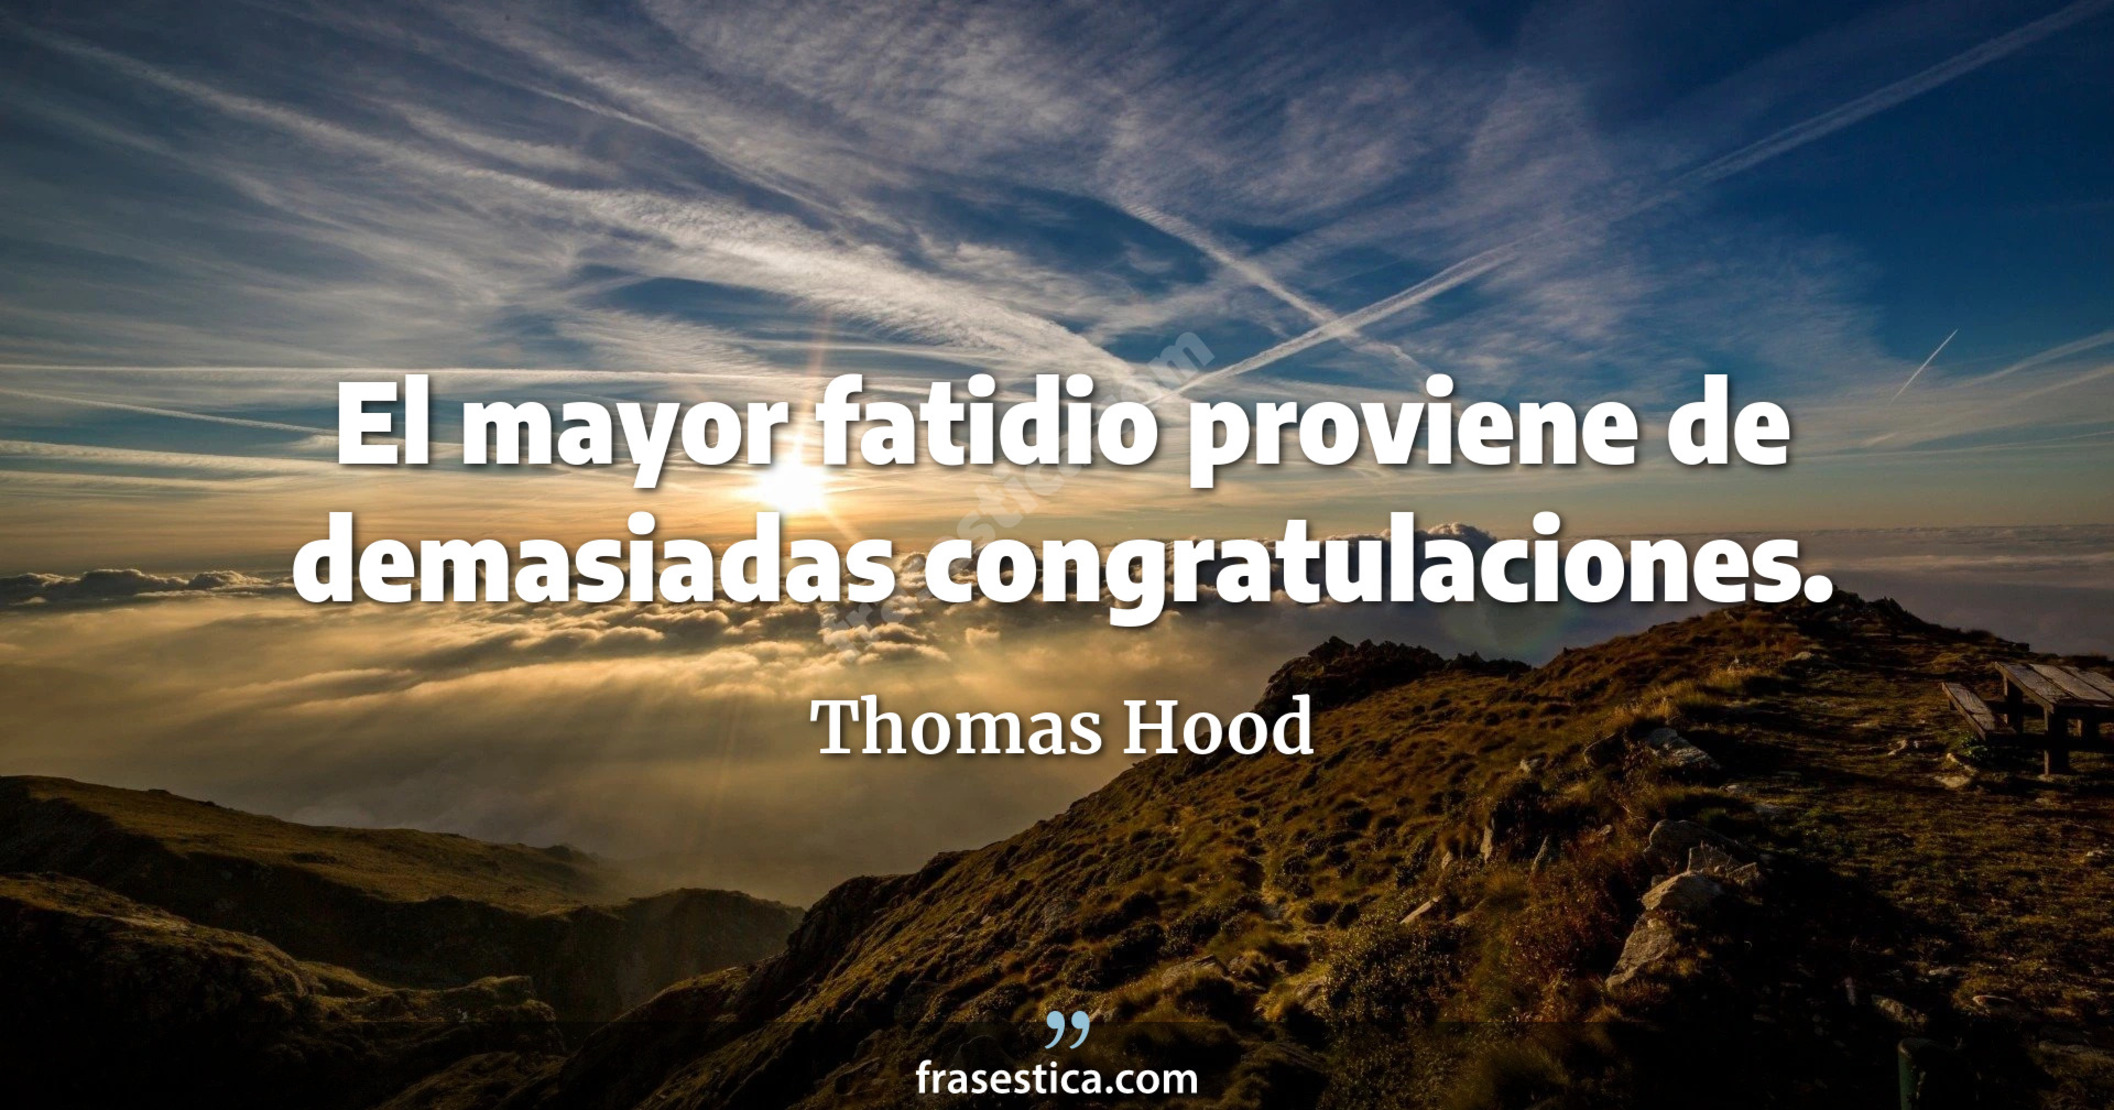 El mayor fatidio proviene de demasiadas congratulaciones. - Thomas Hood